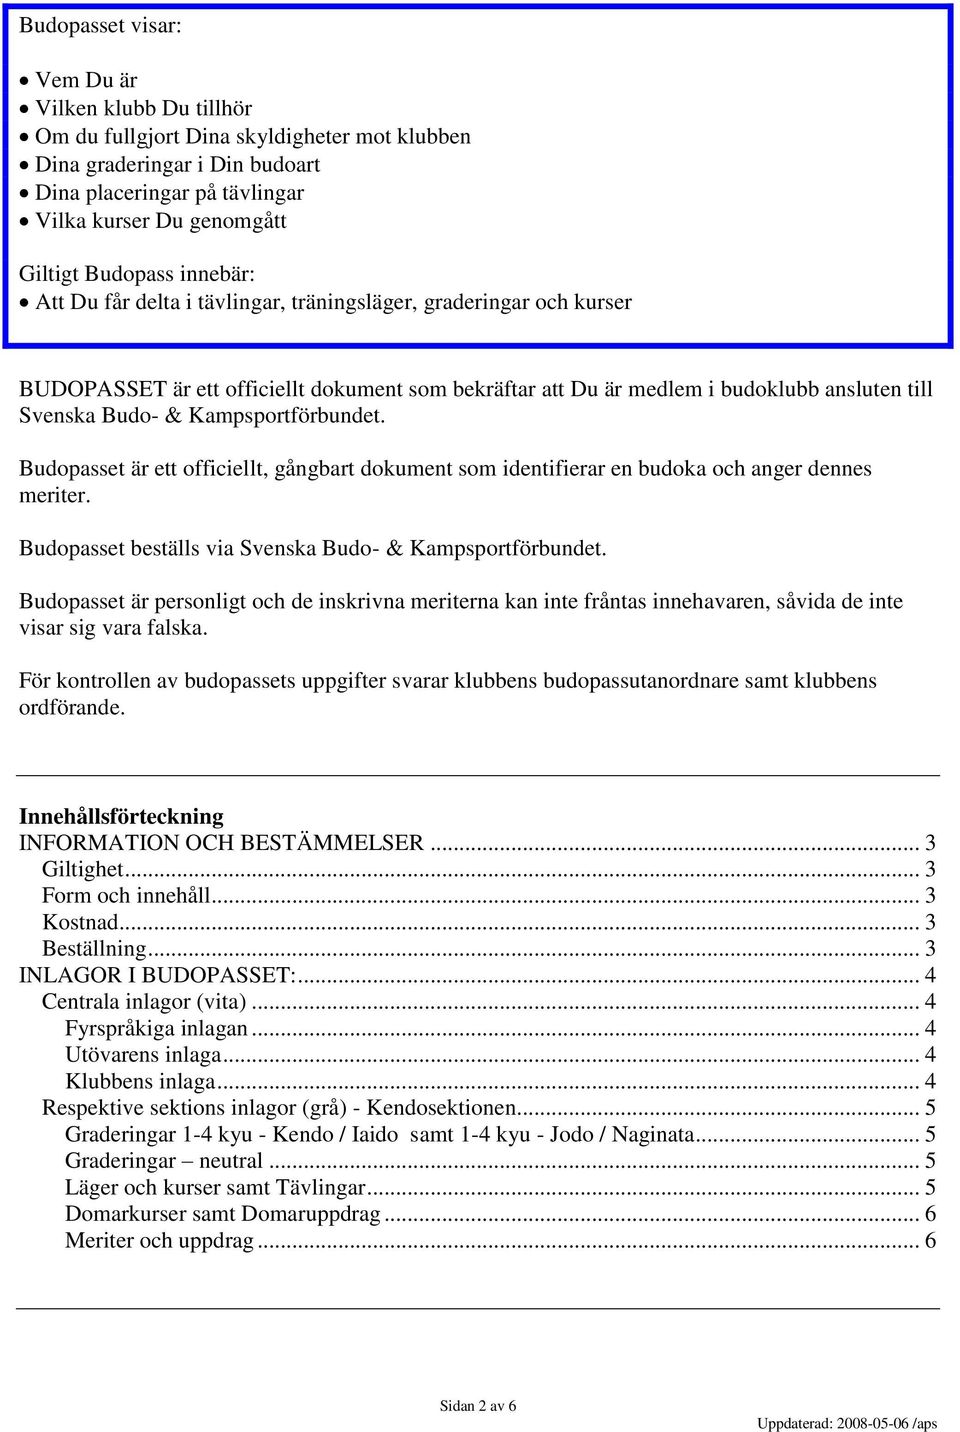 Kampsportförbundet. Budopasset är ett officiellt, gångbart dokument som identifierar en budoka och anger dennes meriter. Budopasset beställs via Svenska Budo- & Kampsportförbundet.